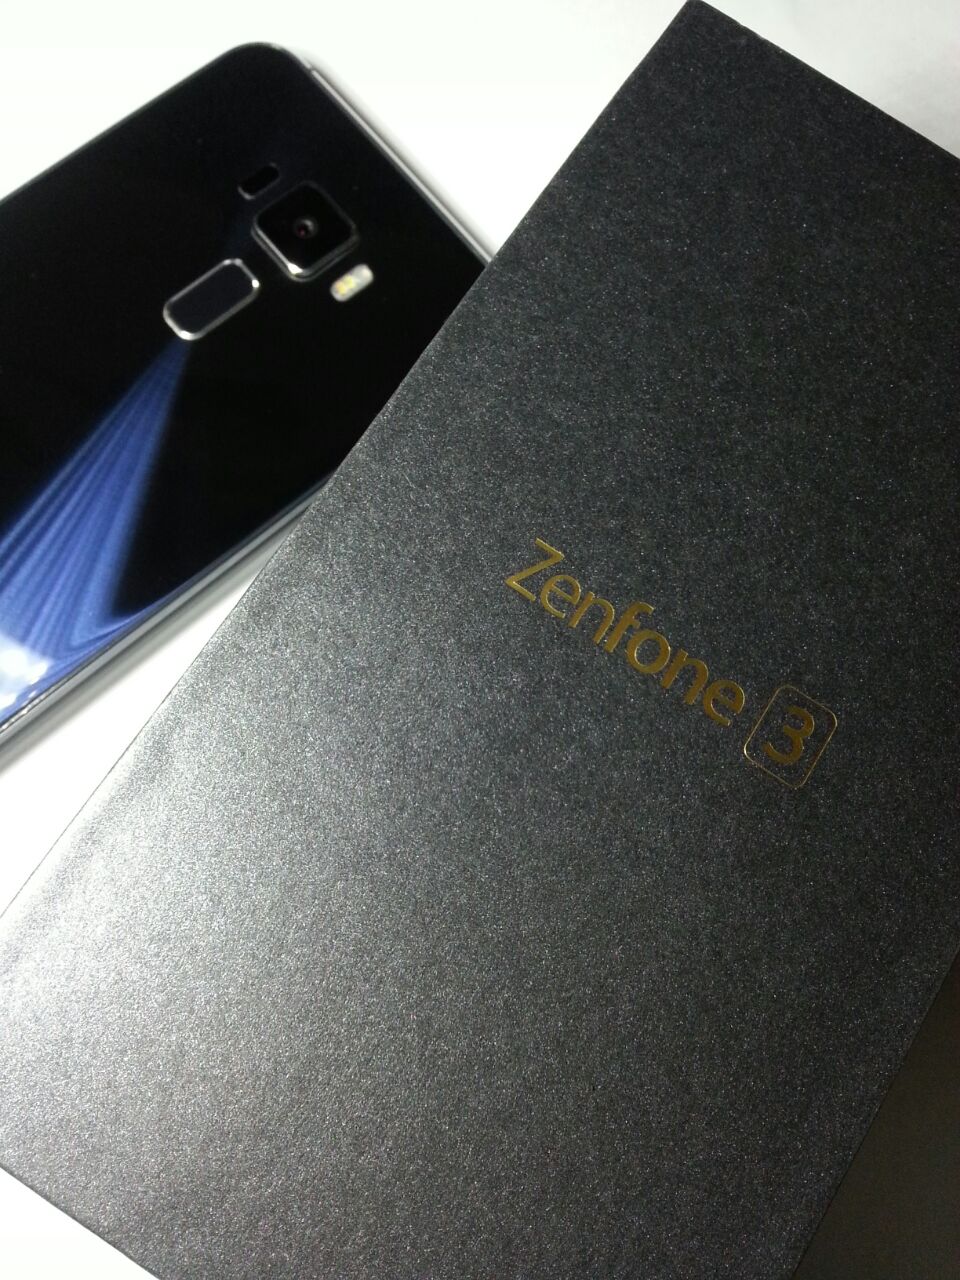 Asus ZenFone 3 5.5-inch